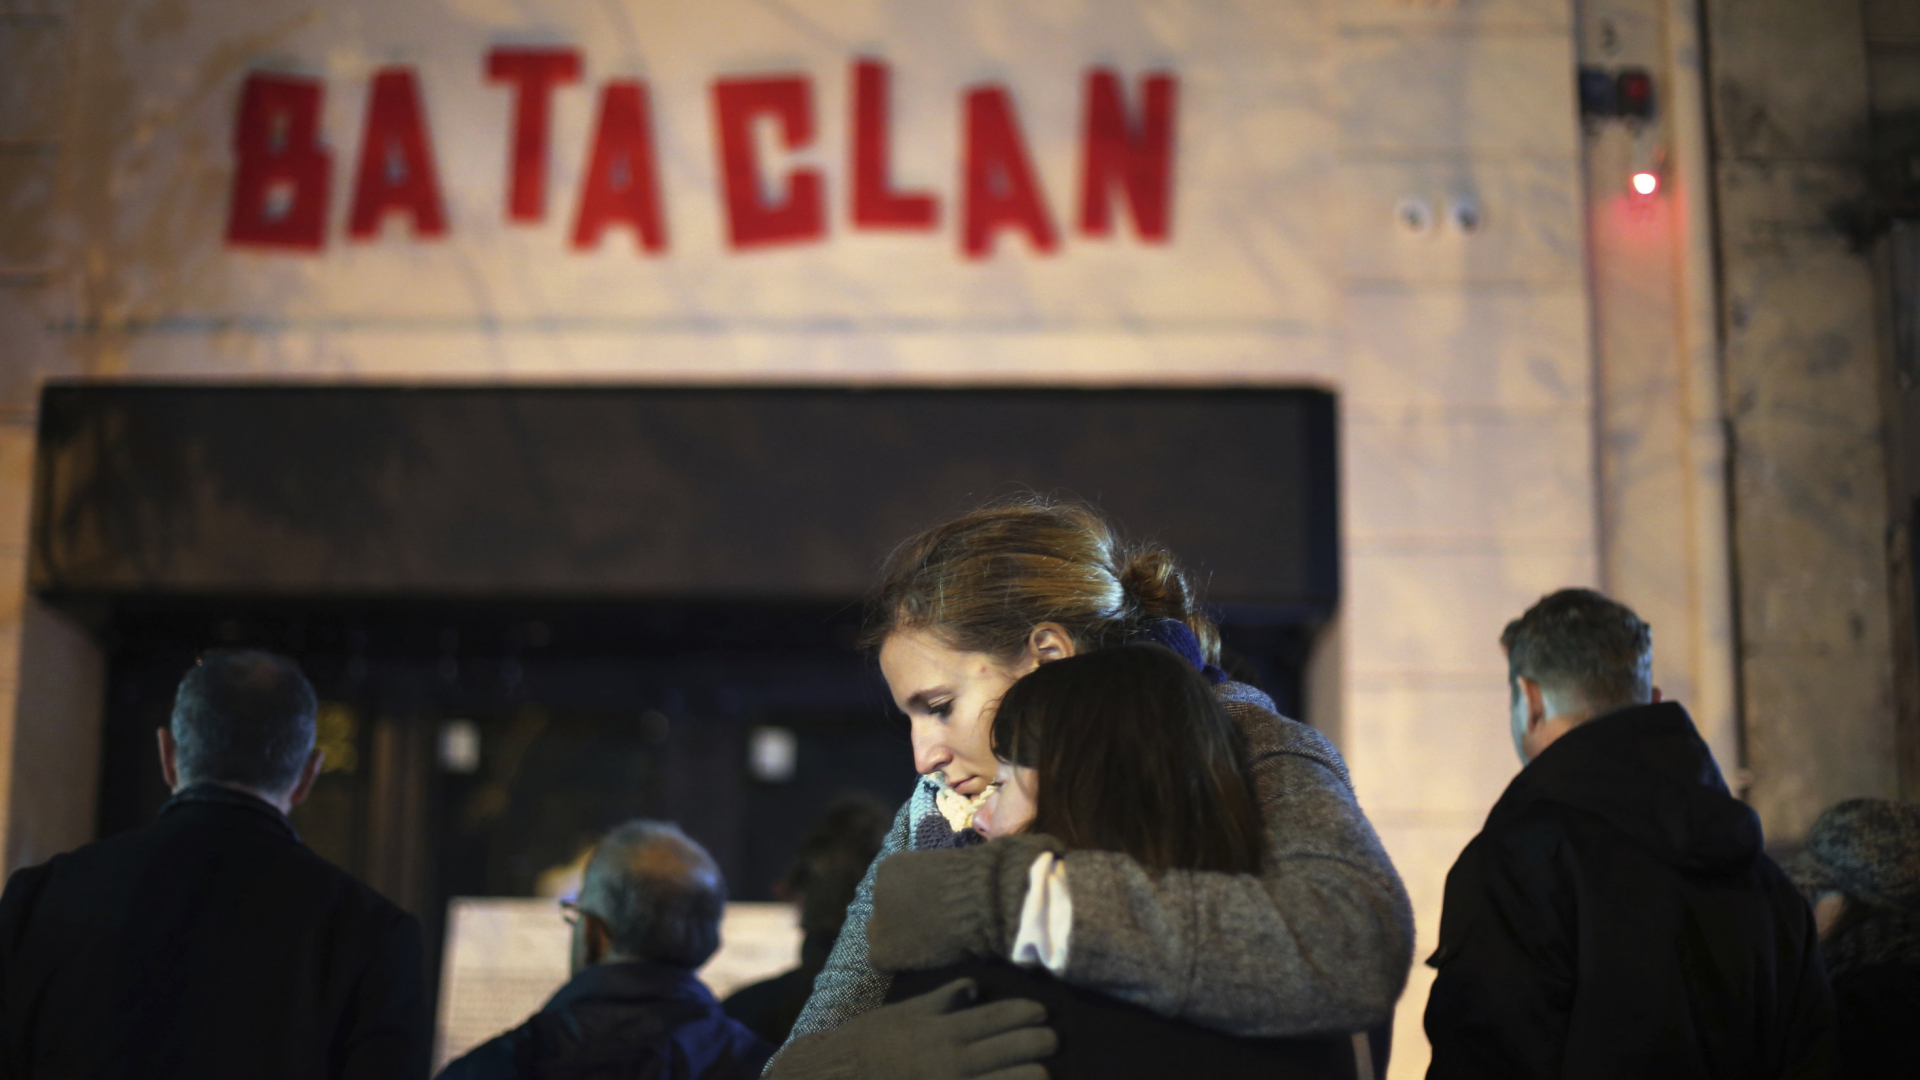 Vor dem Pariser Musikklung Bataclan umarmen sich am 13.11.2015 nach dem Terroranschlag zwei Frauen | AP